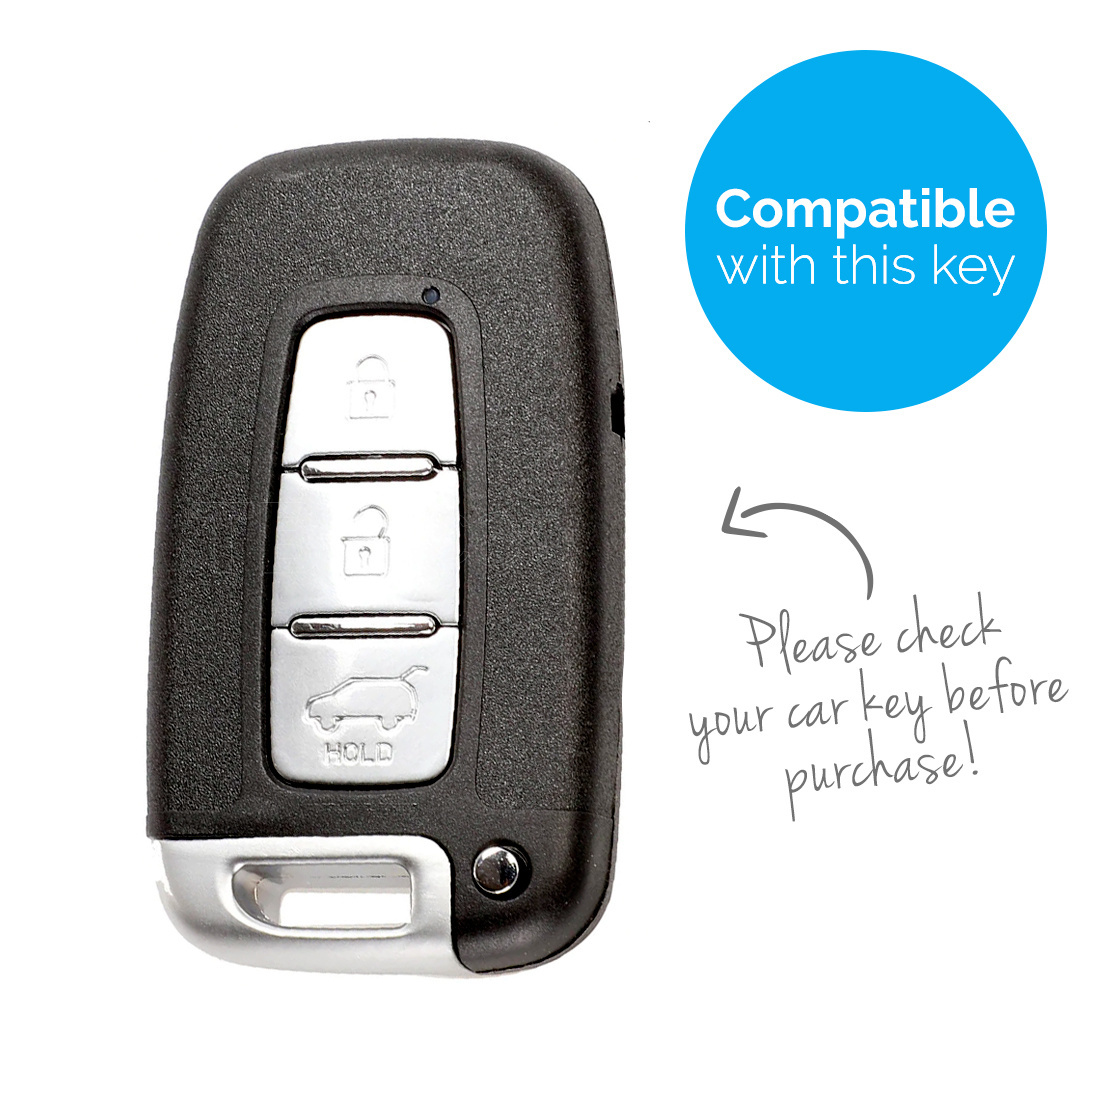 TBU car TBU car Cover chiavi auto compatibile con Kia - Copertura protettiva - Custodia Protettiva in Silicone - Rosso